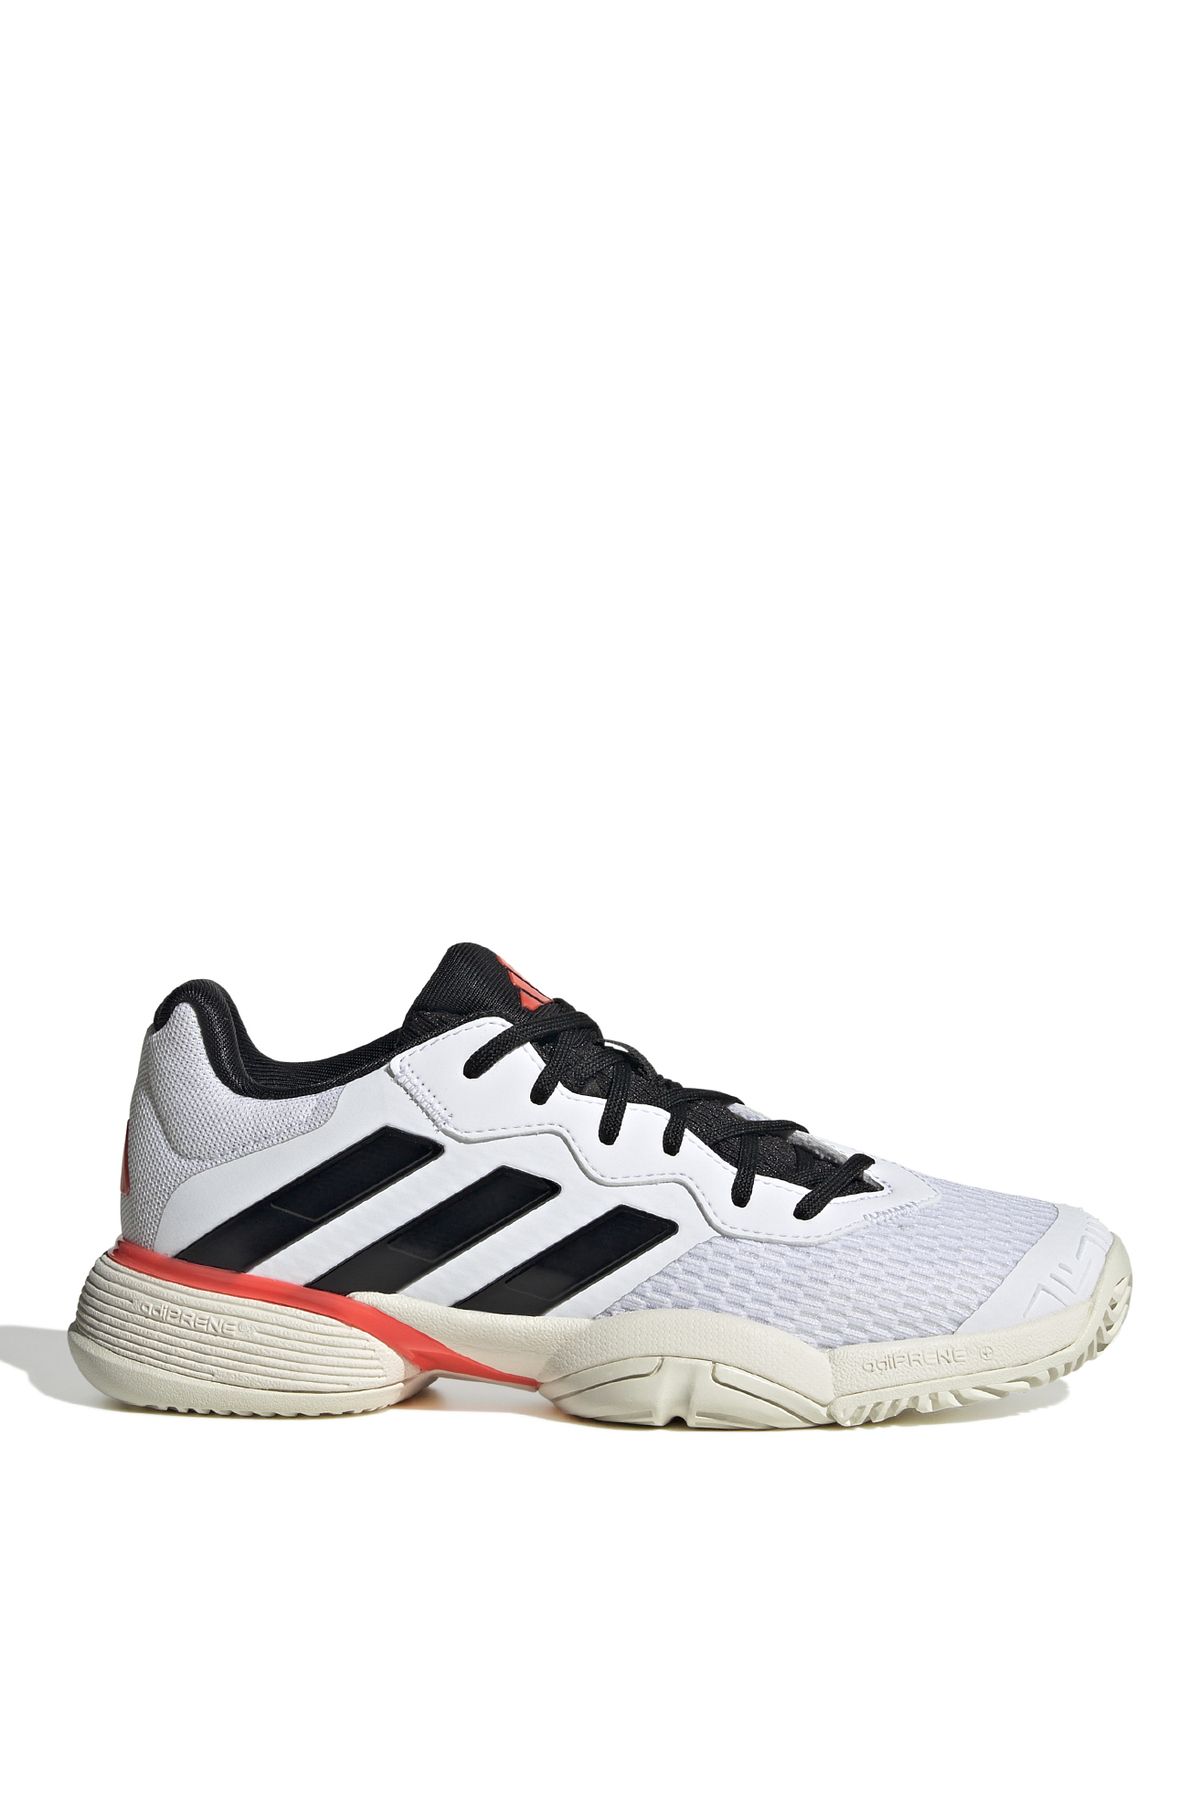 adidas Beyaz Erkek Tenis Ayakkabısı IF0451-Barricade K